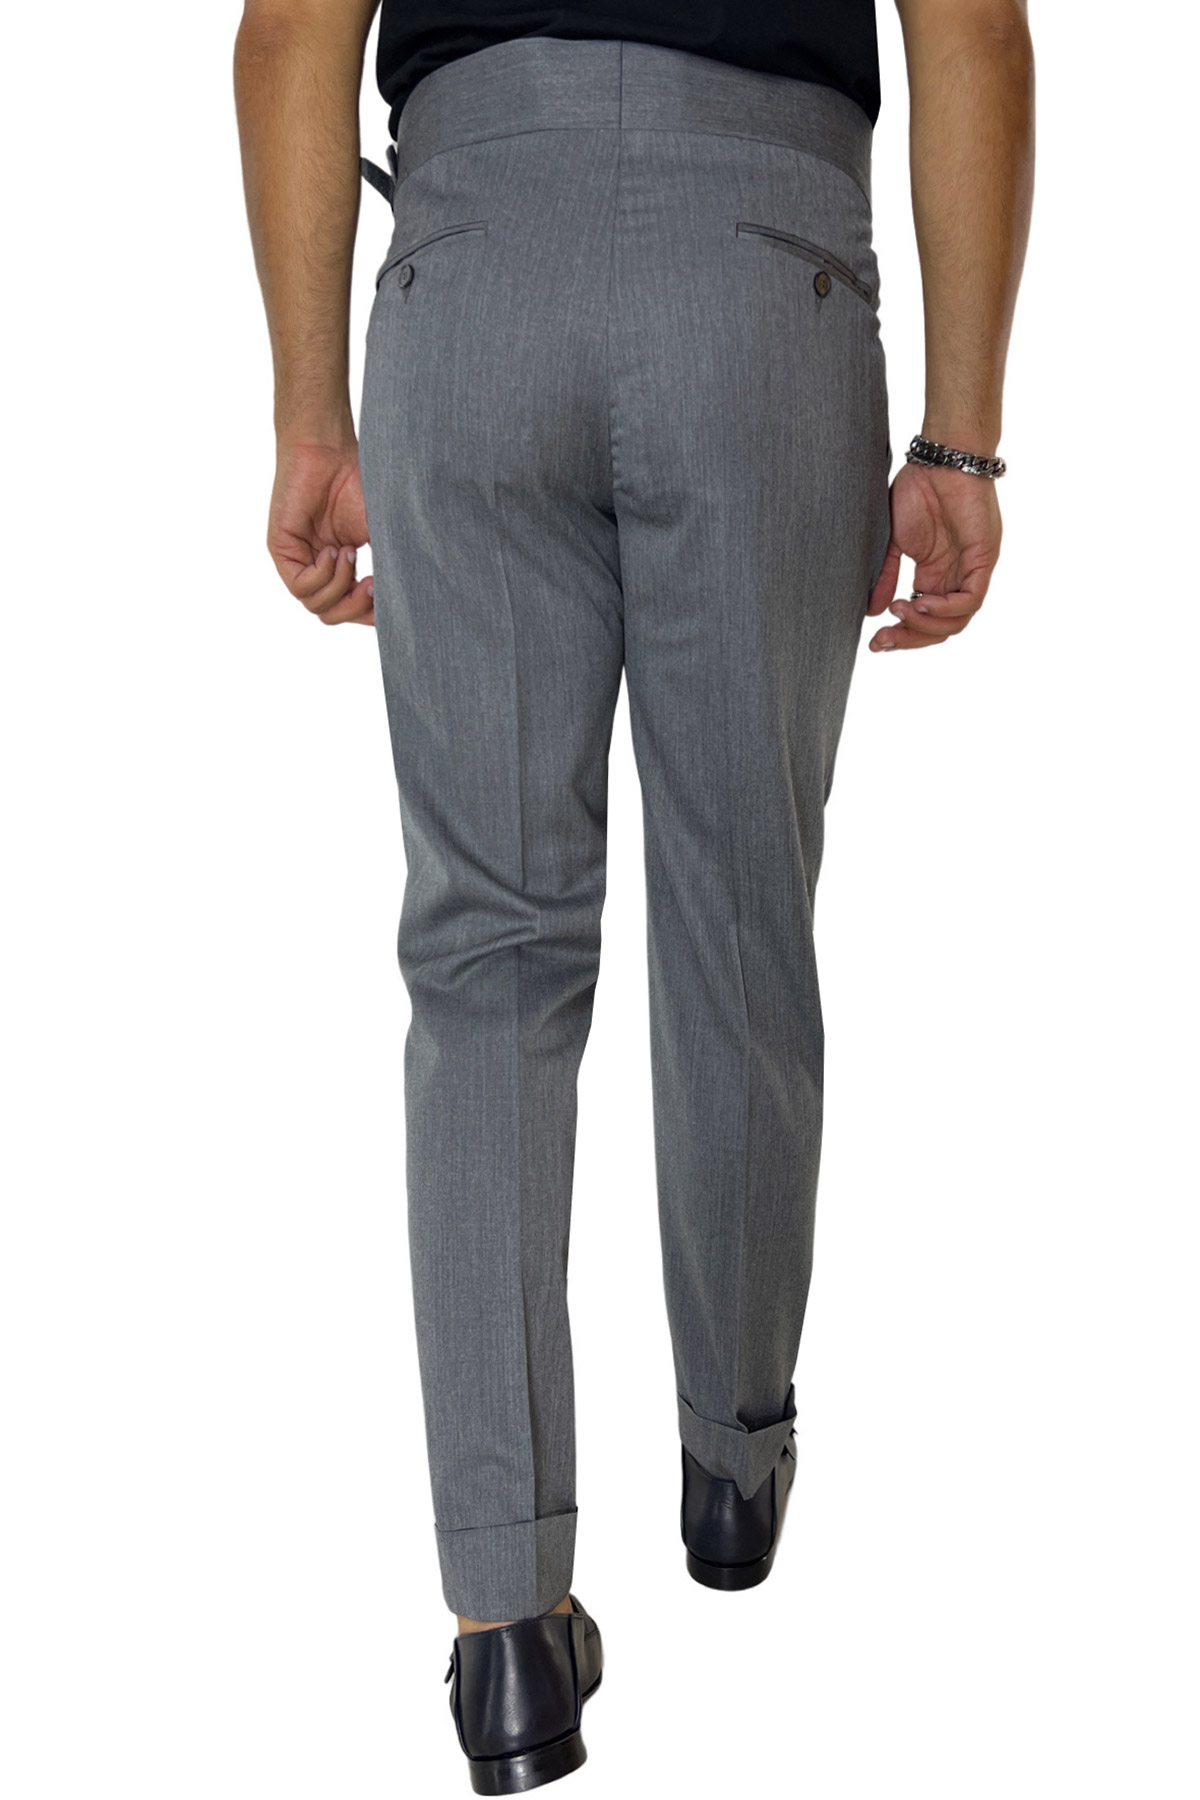 Pantalone uomo grigio medio vita alta modello biforcato in fresco lana super 130's Holland & Sherry